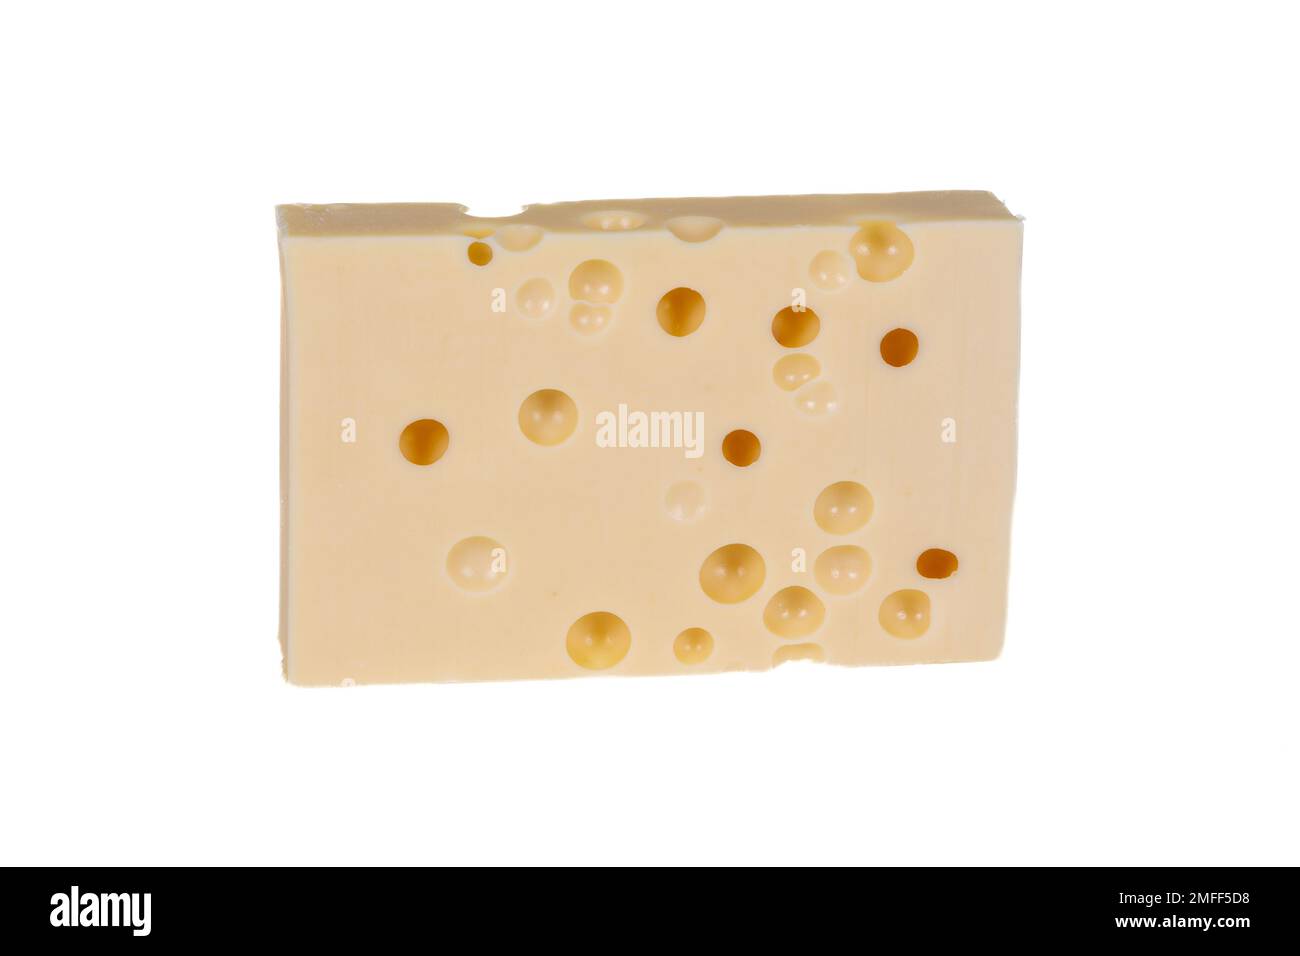 Morceau de fromage dur Gruyere classé de type suisse de fromage alpin comme emmental Banque D'Images